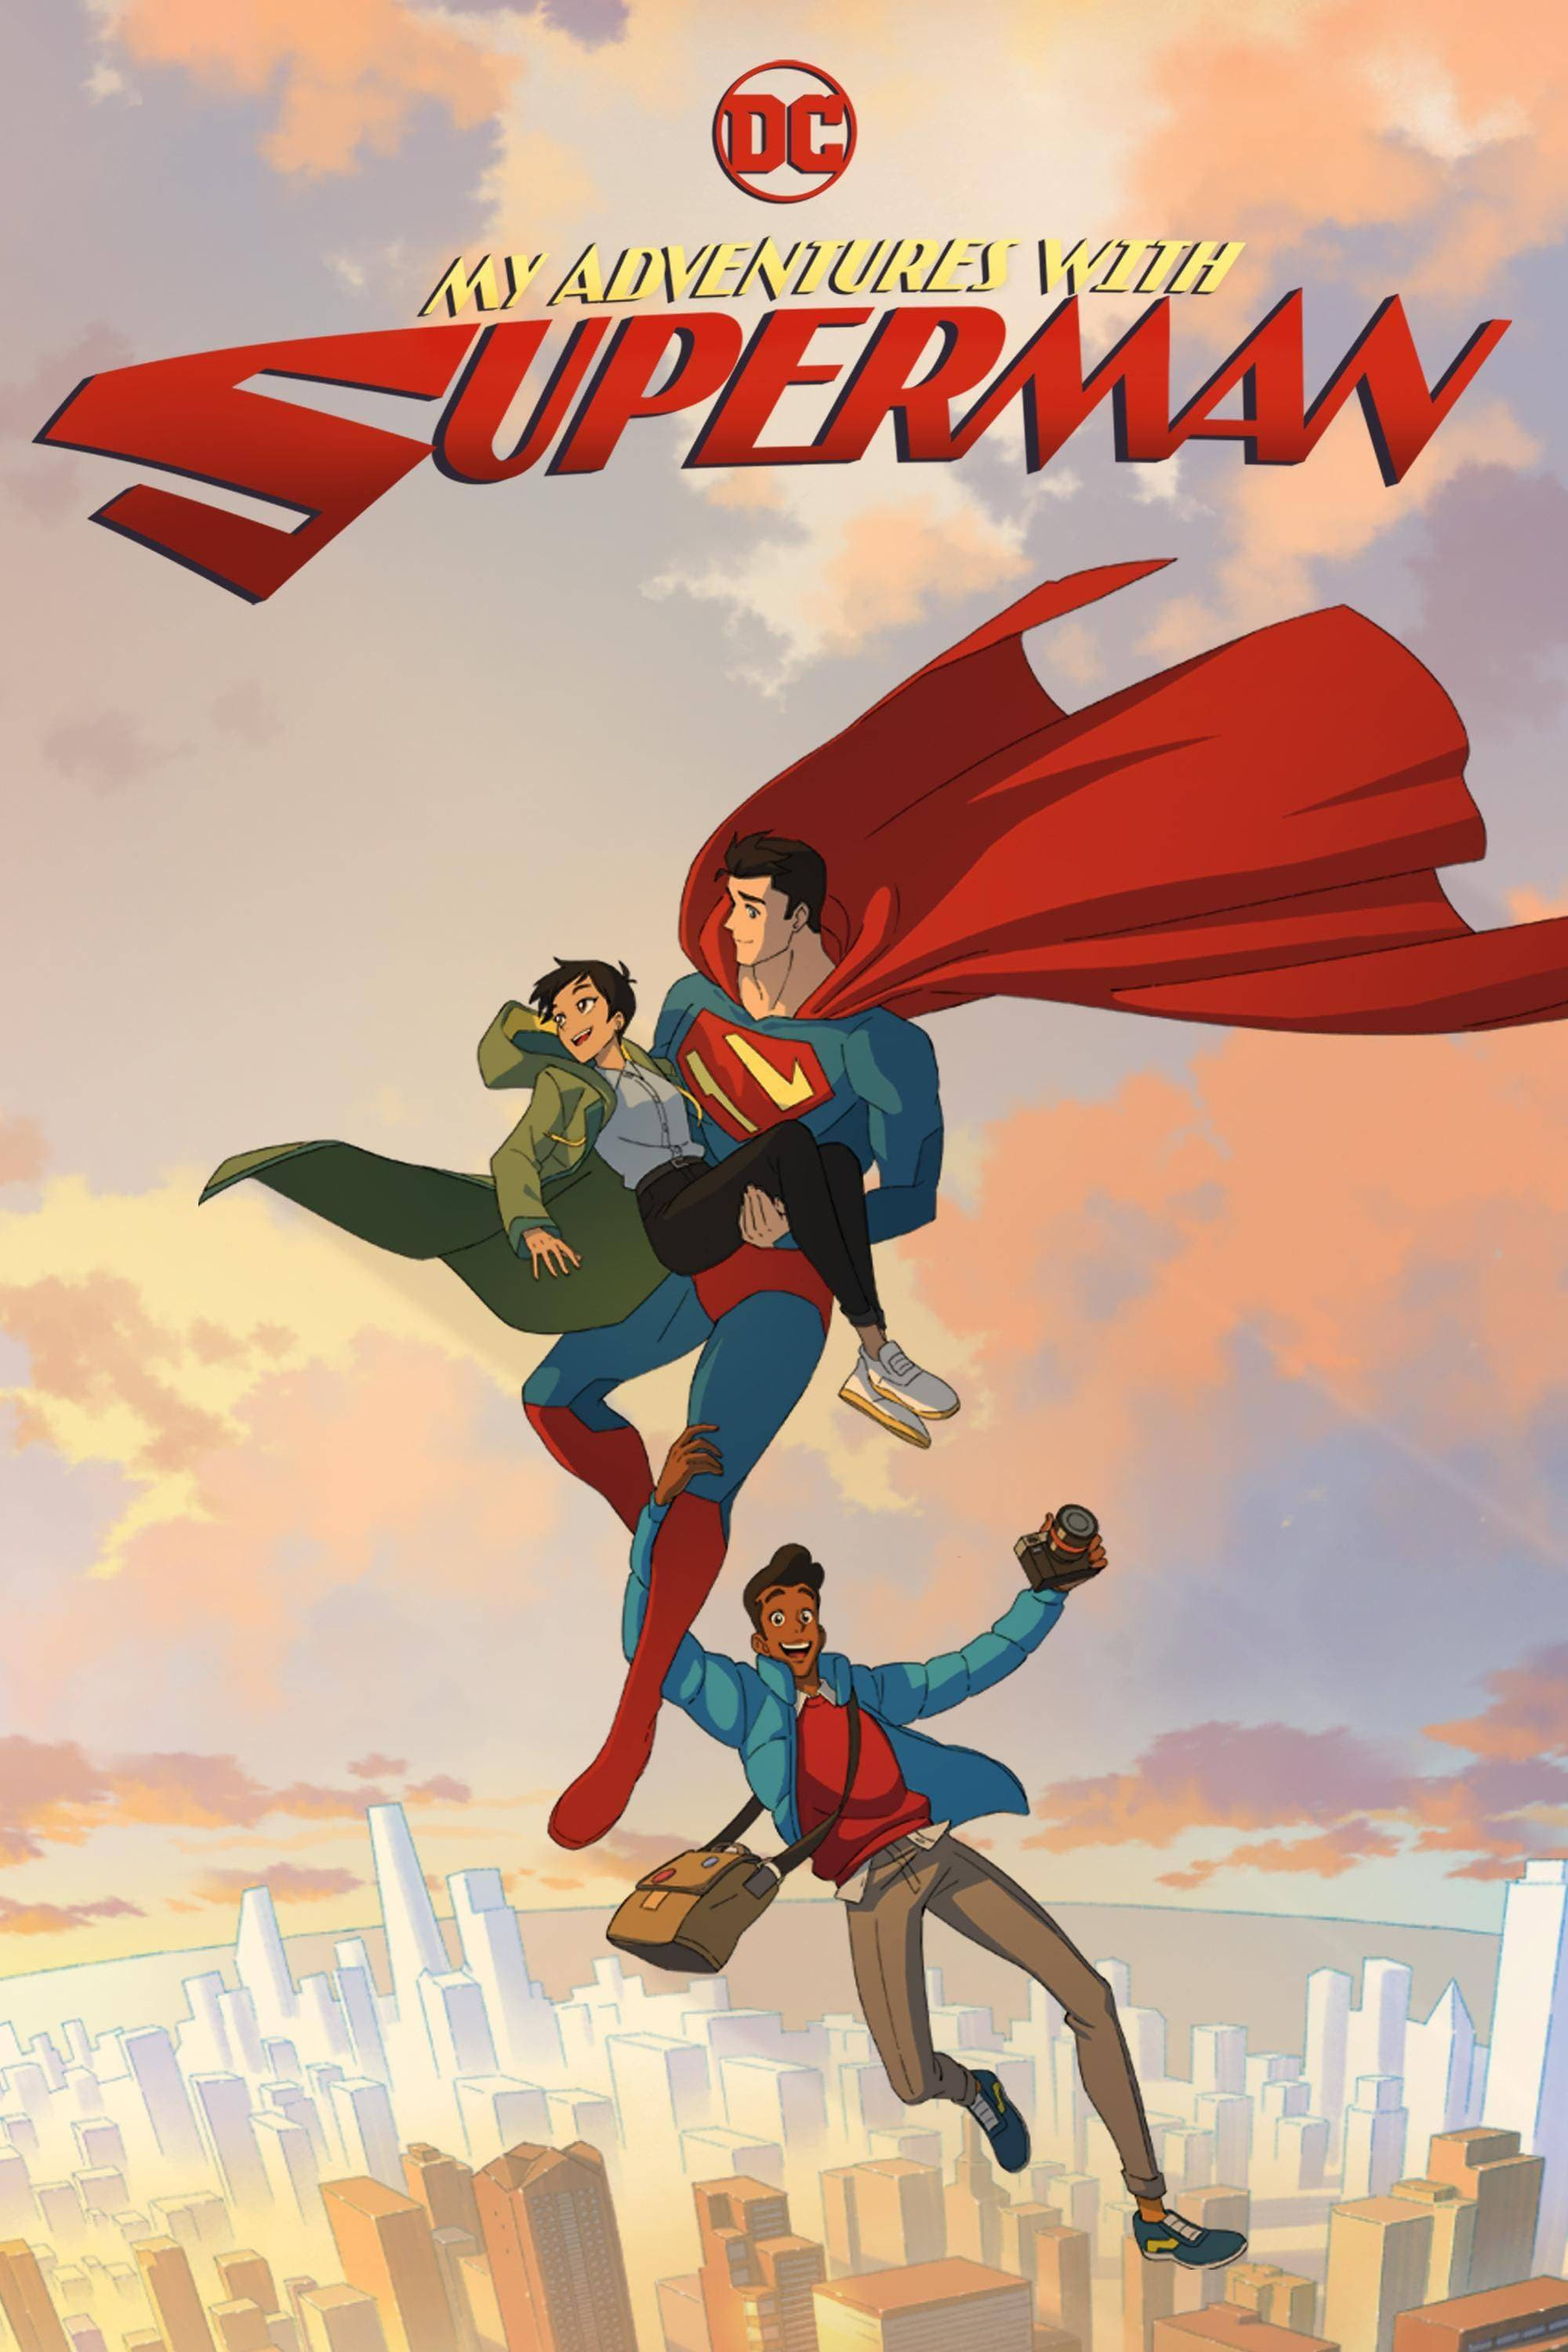 My Adventures with Superman |‌ ماجراهای من و سوپرمن